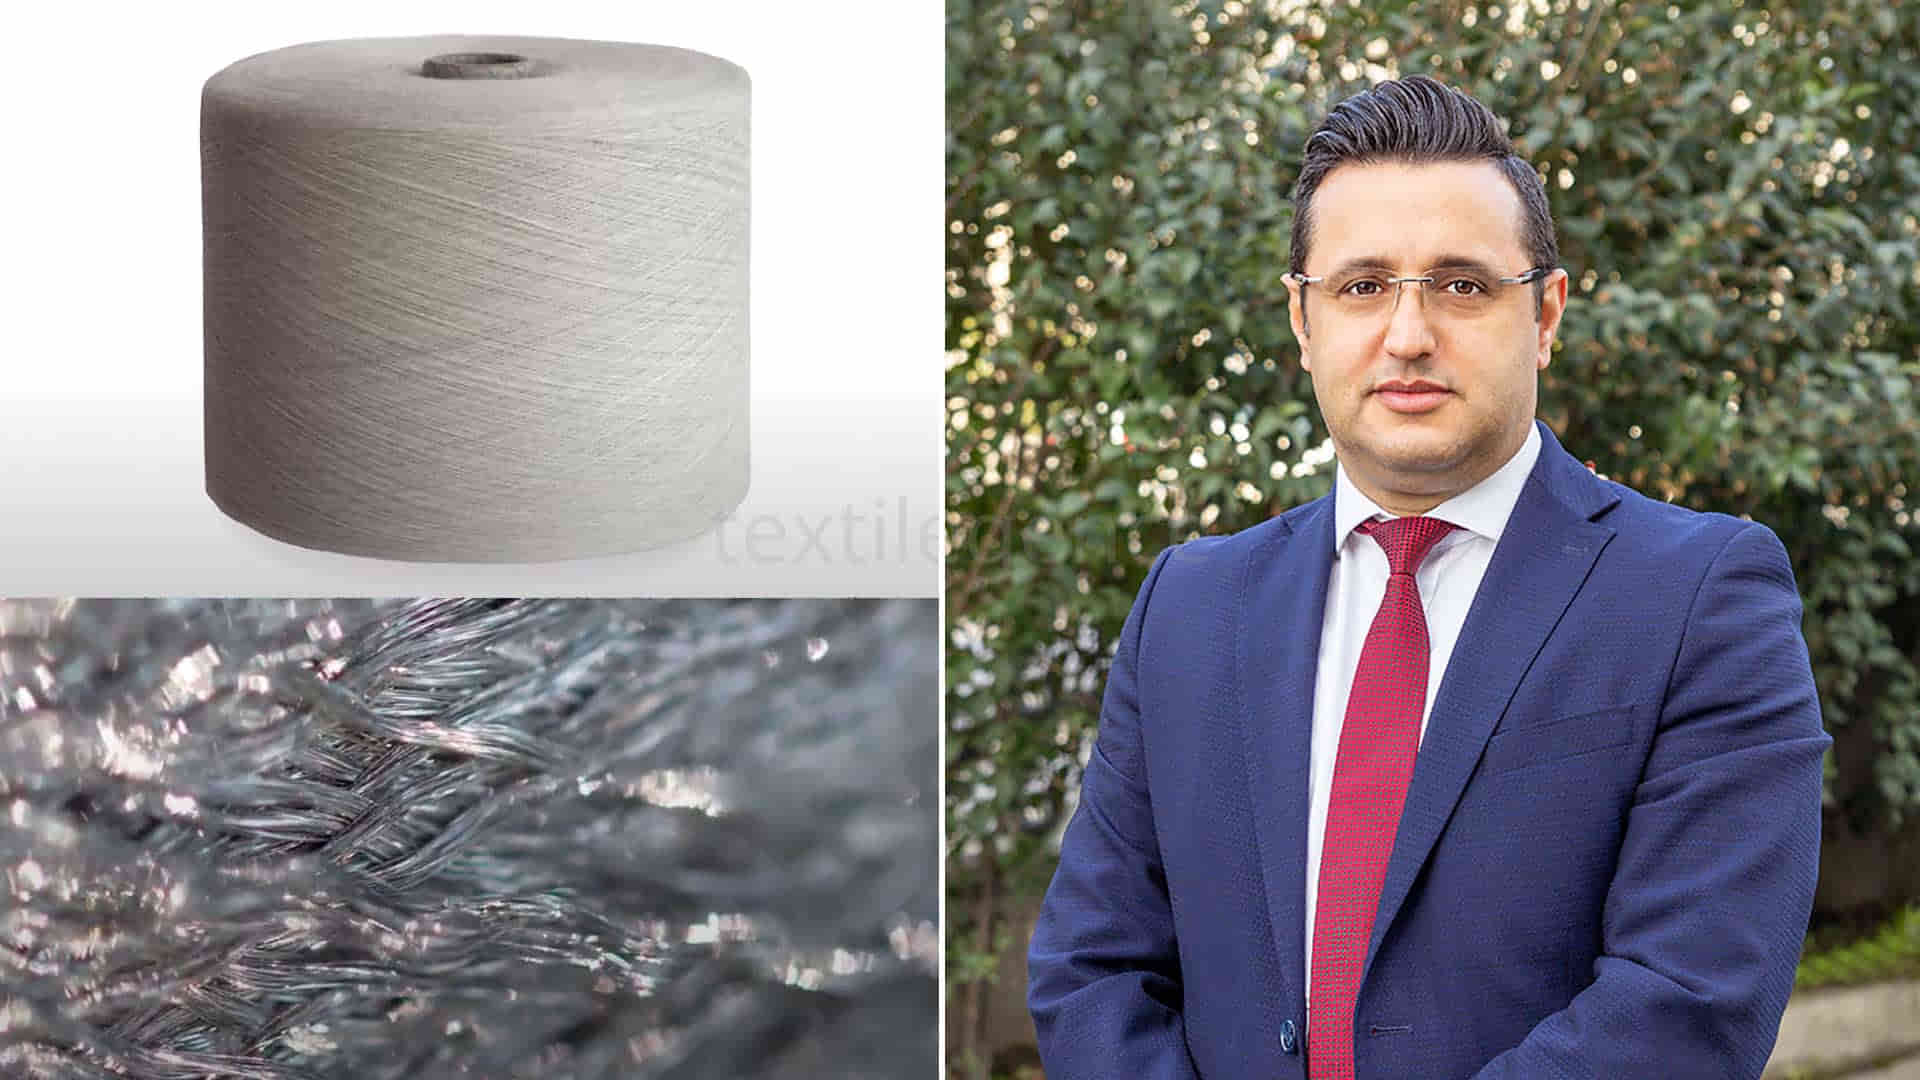 Dursun Ferikel, General Manager of Teksel Tekstil A.Ş.   Image Source: Teksel Tekstil